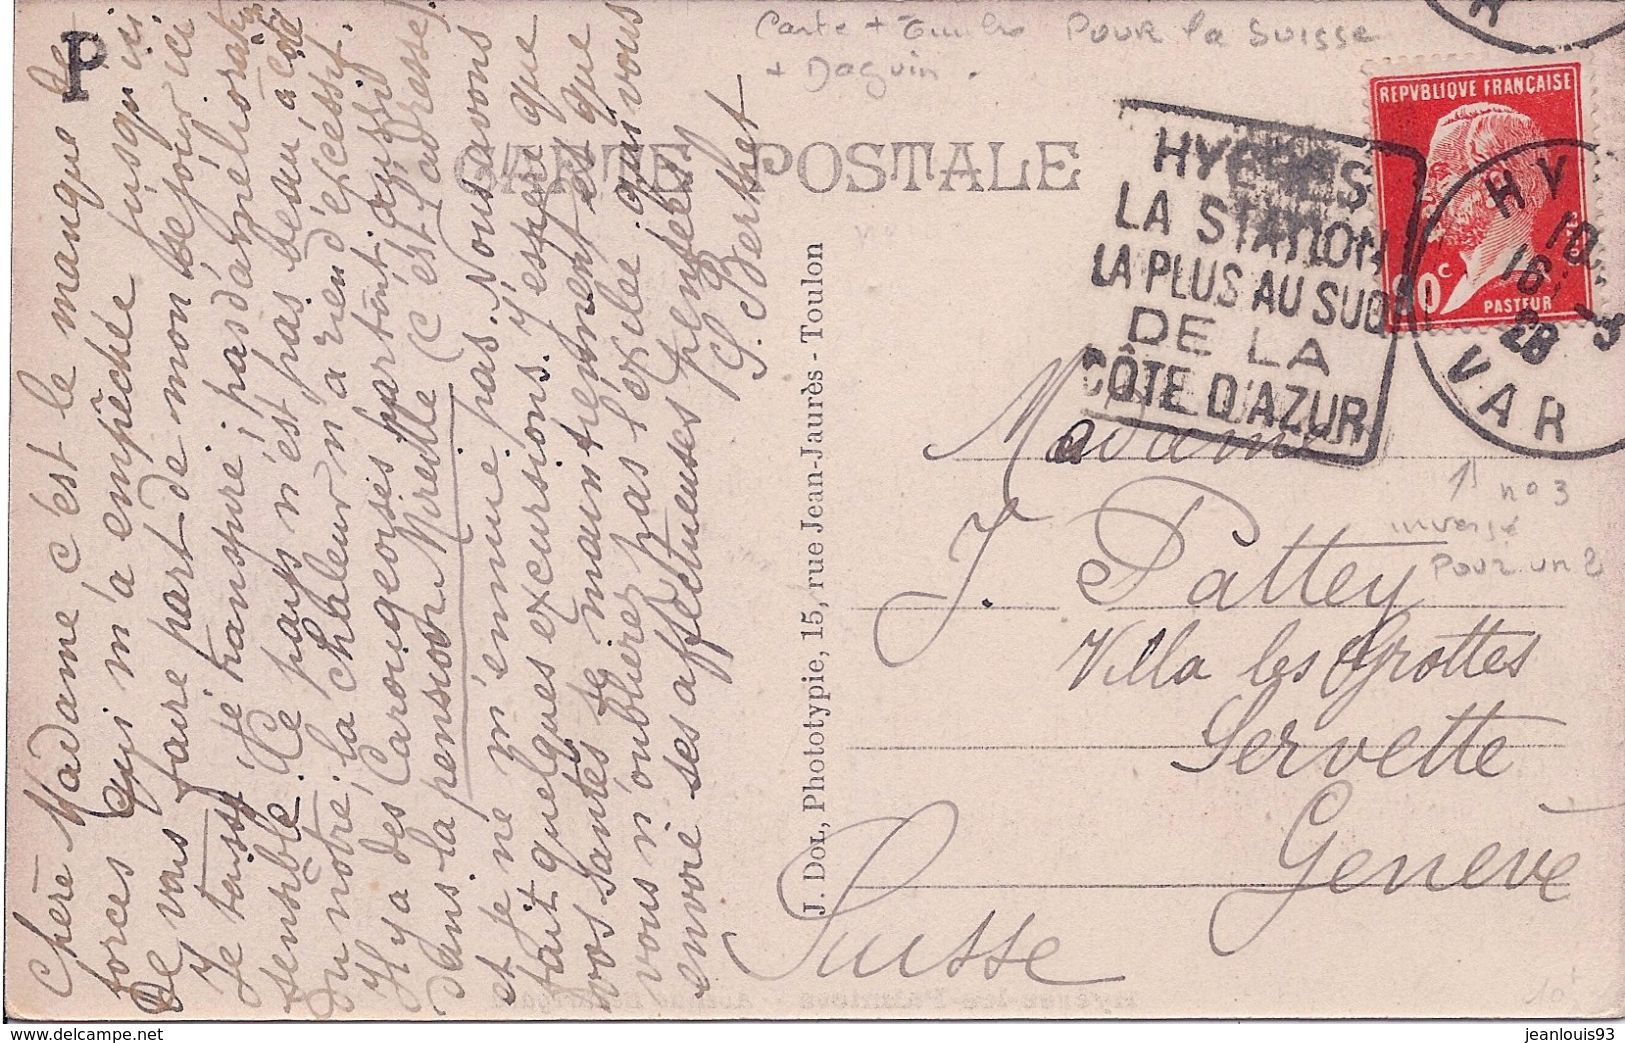 FRANCE - CARTE POSTALE AVEC DAGUIN HYERES POUR LA SUISSE - CURIOSITE LE 3 DE 1928 EMPLOYE A L'ENVERS POUR UN 2 - RARE - Storia Postale